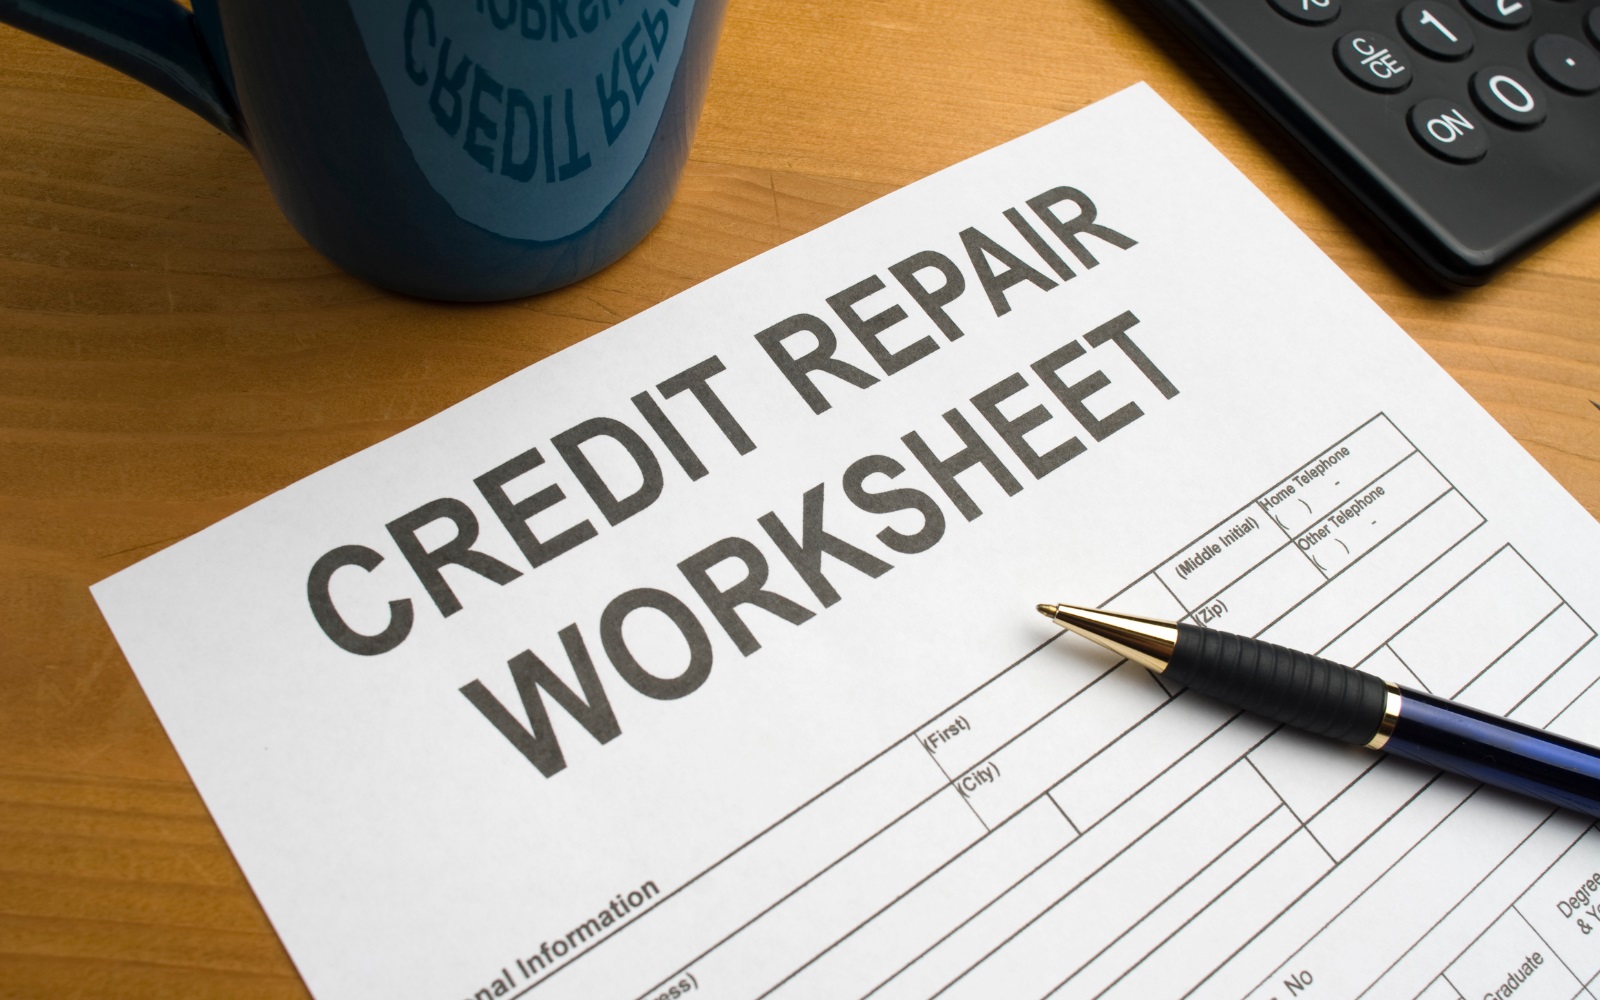 Descriptive Credit Repair Business Names.